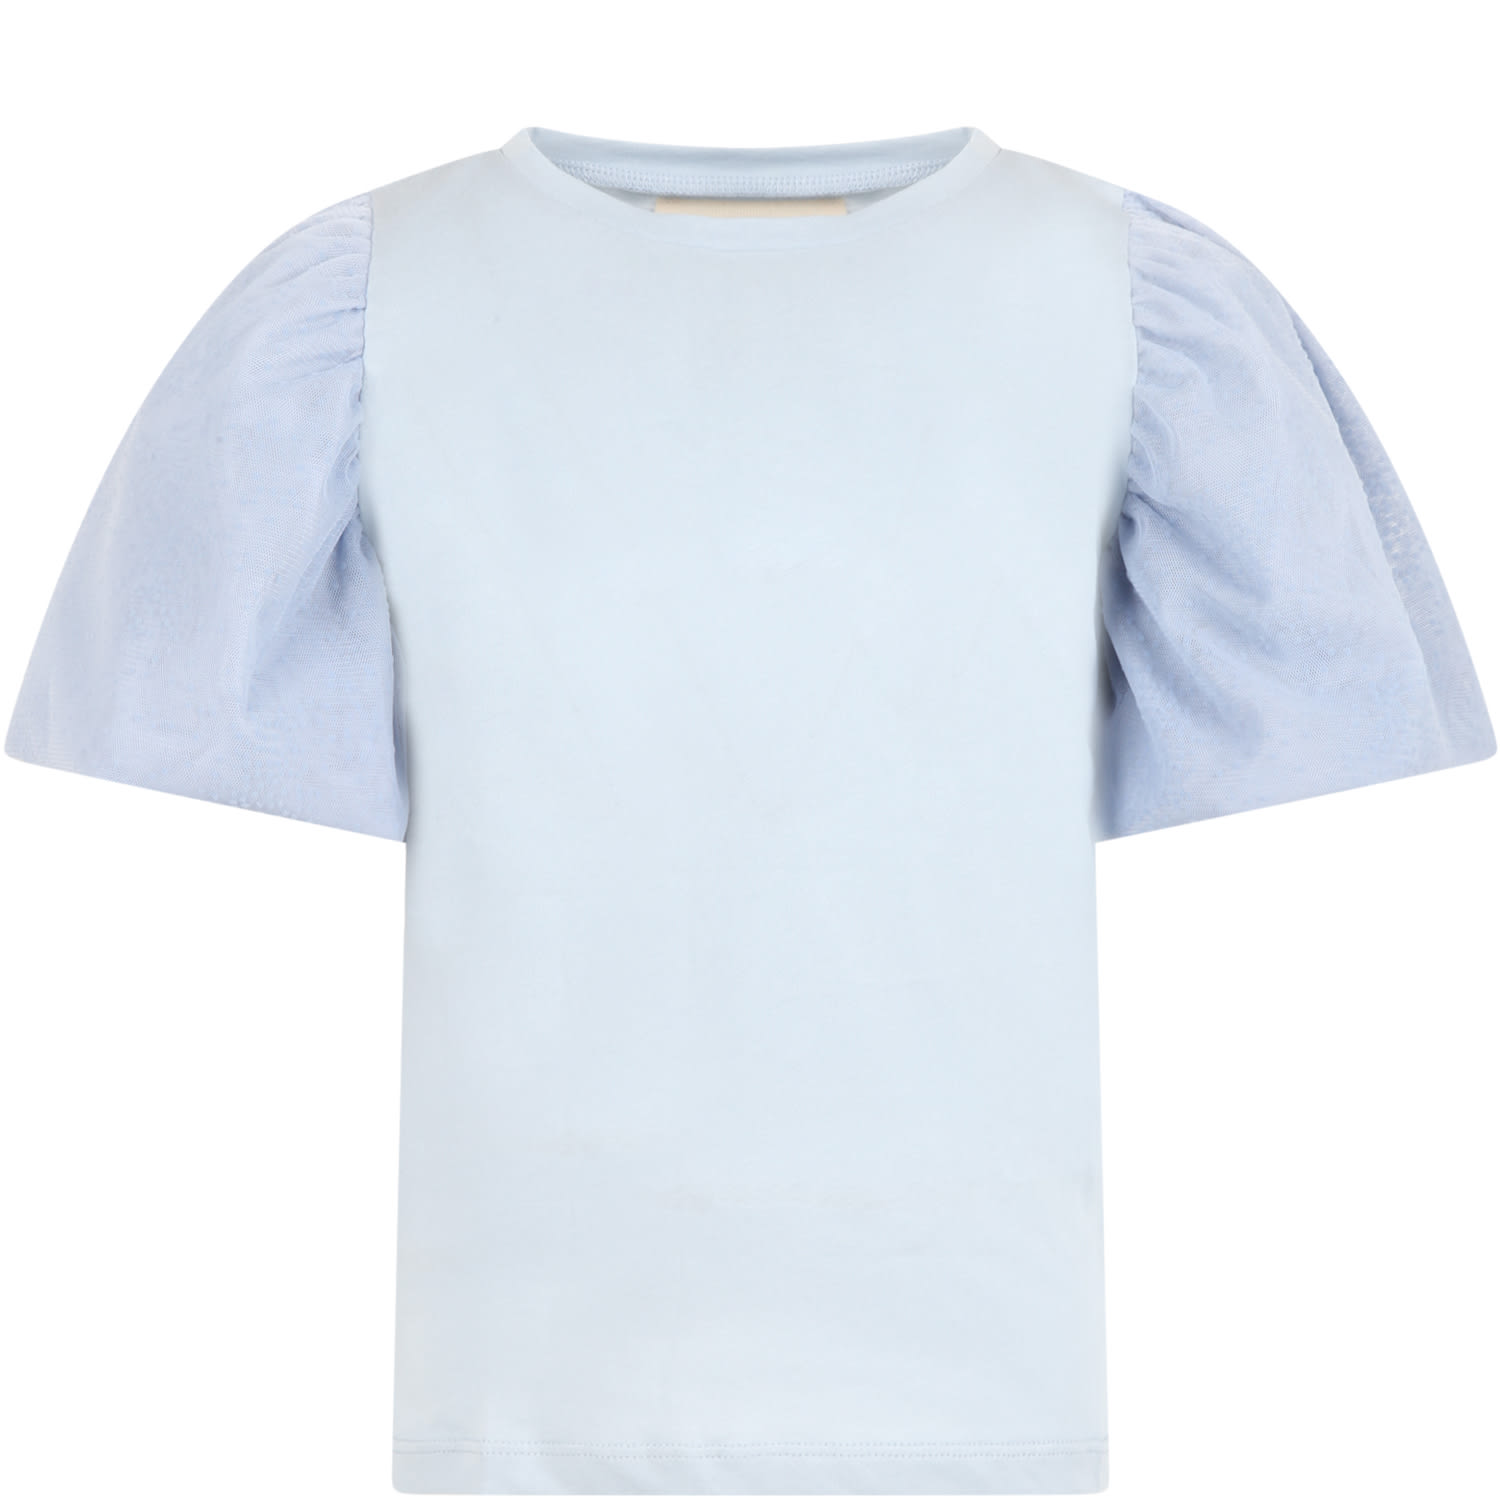 Douuod Light Blue T-shirt For Girl